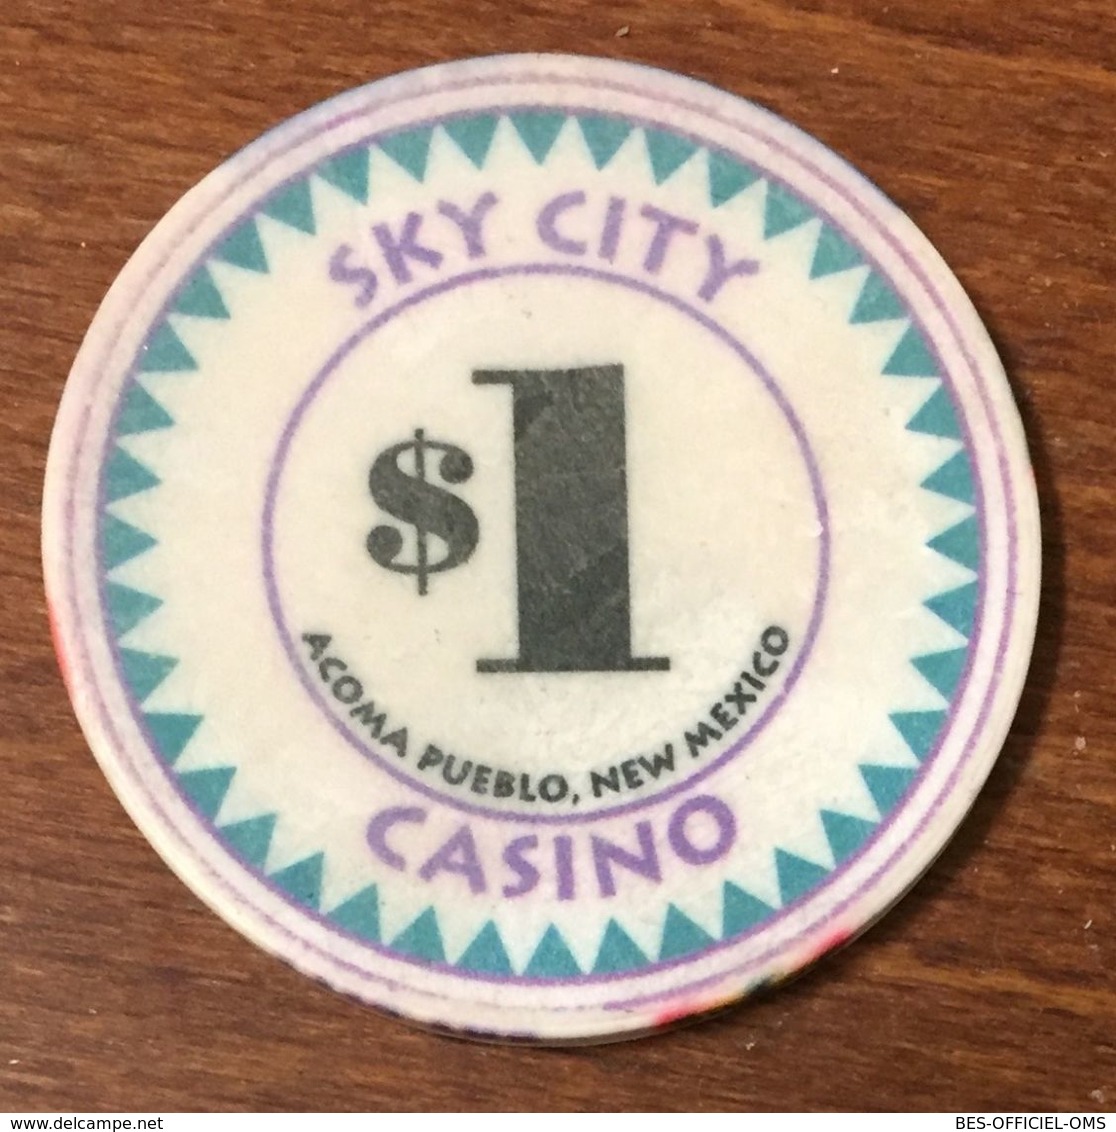 ÉTATS-UNIS USA NEW MEXICO ACOMA PUEBLO SKY CITY CASINO CHIP $ 1 JETON TOKENS COINS GAMING - Casino